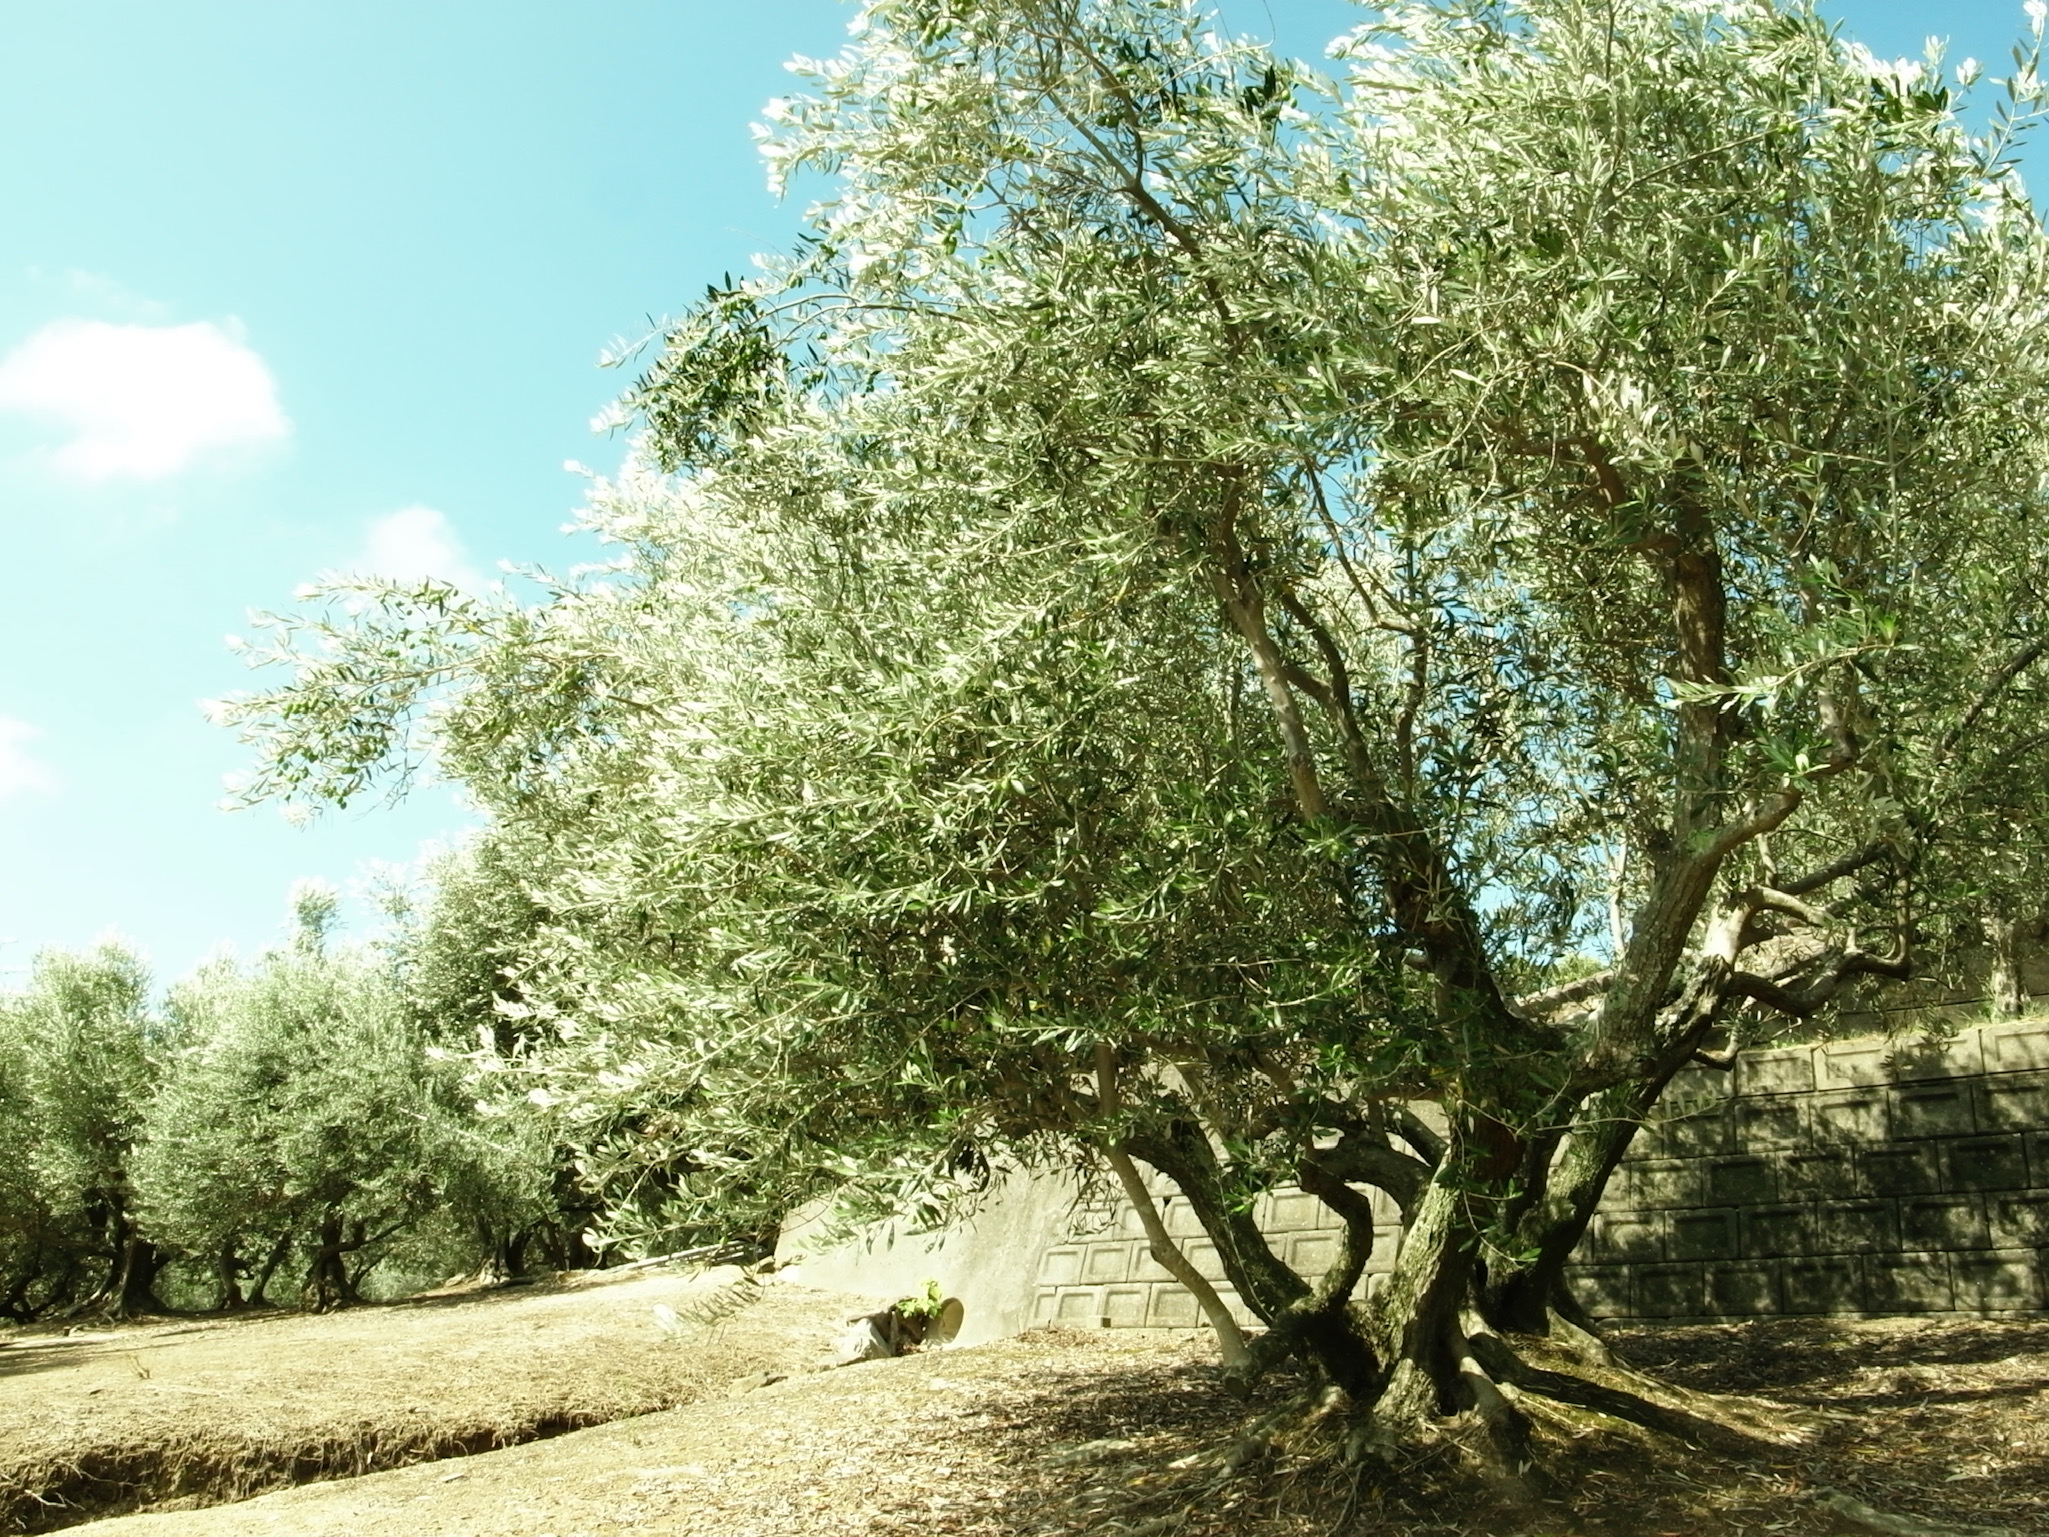 オリーブの木